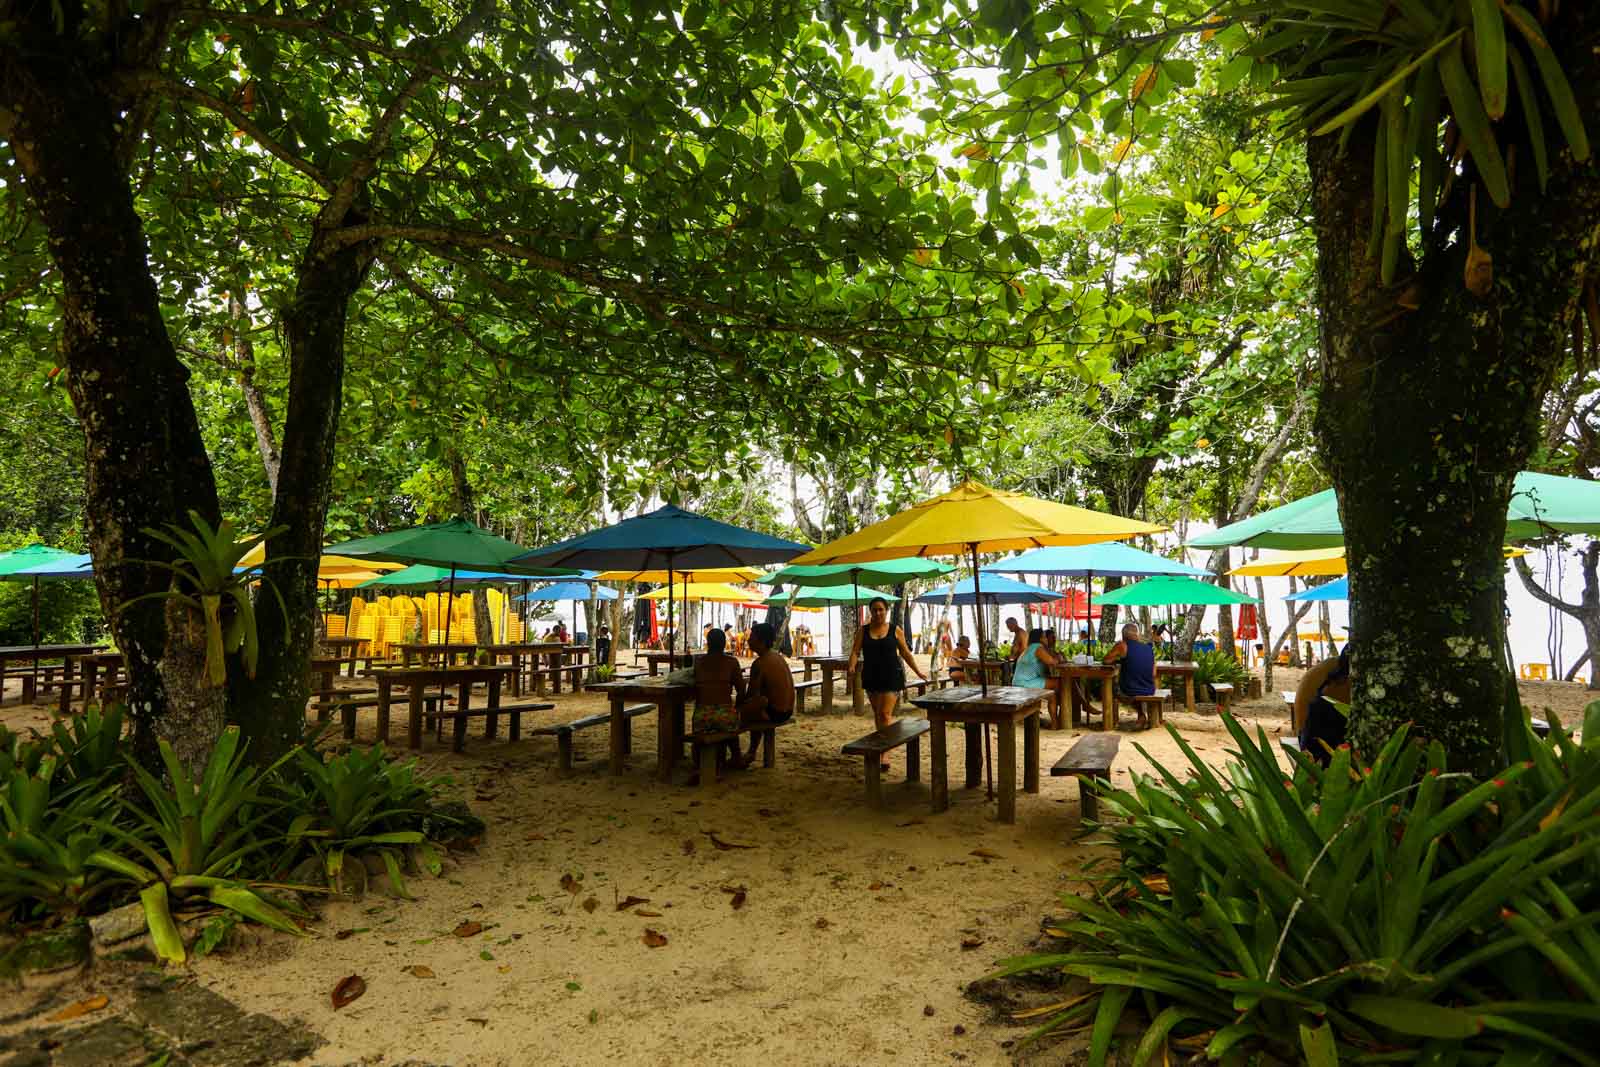 Melhores praias para criança em São Paulo